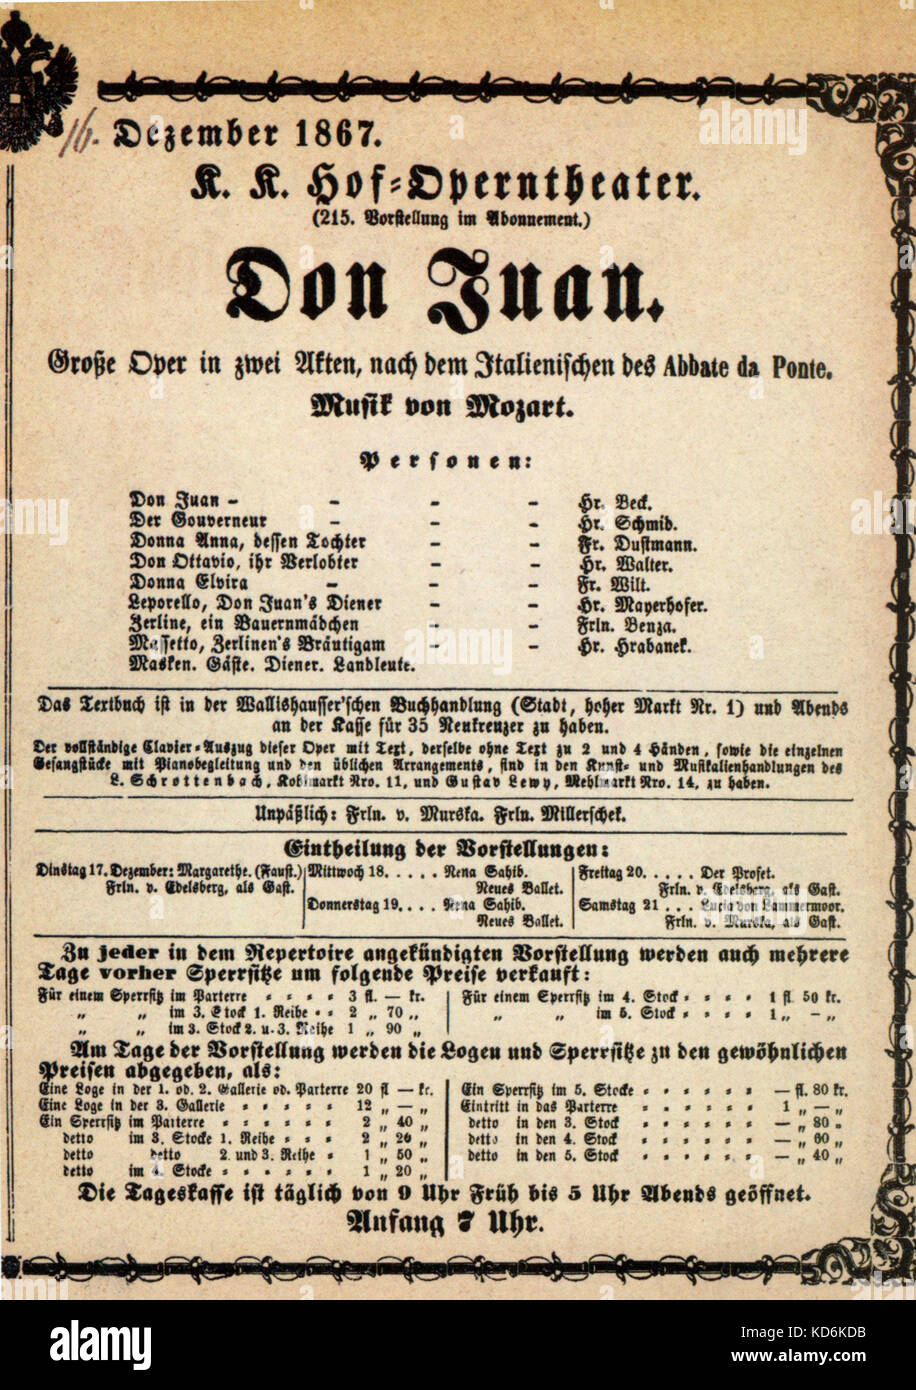 Mozarts Oper Don Juan - Don Giovanni, Wien Theater Programm für Dezember 1867 Leistung. Wolfgang Amadeus Mozart, Österreichischer Komponist, 1756-1791. Stockfoto